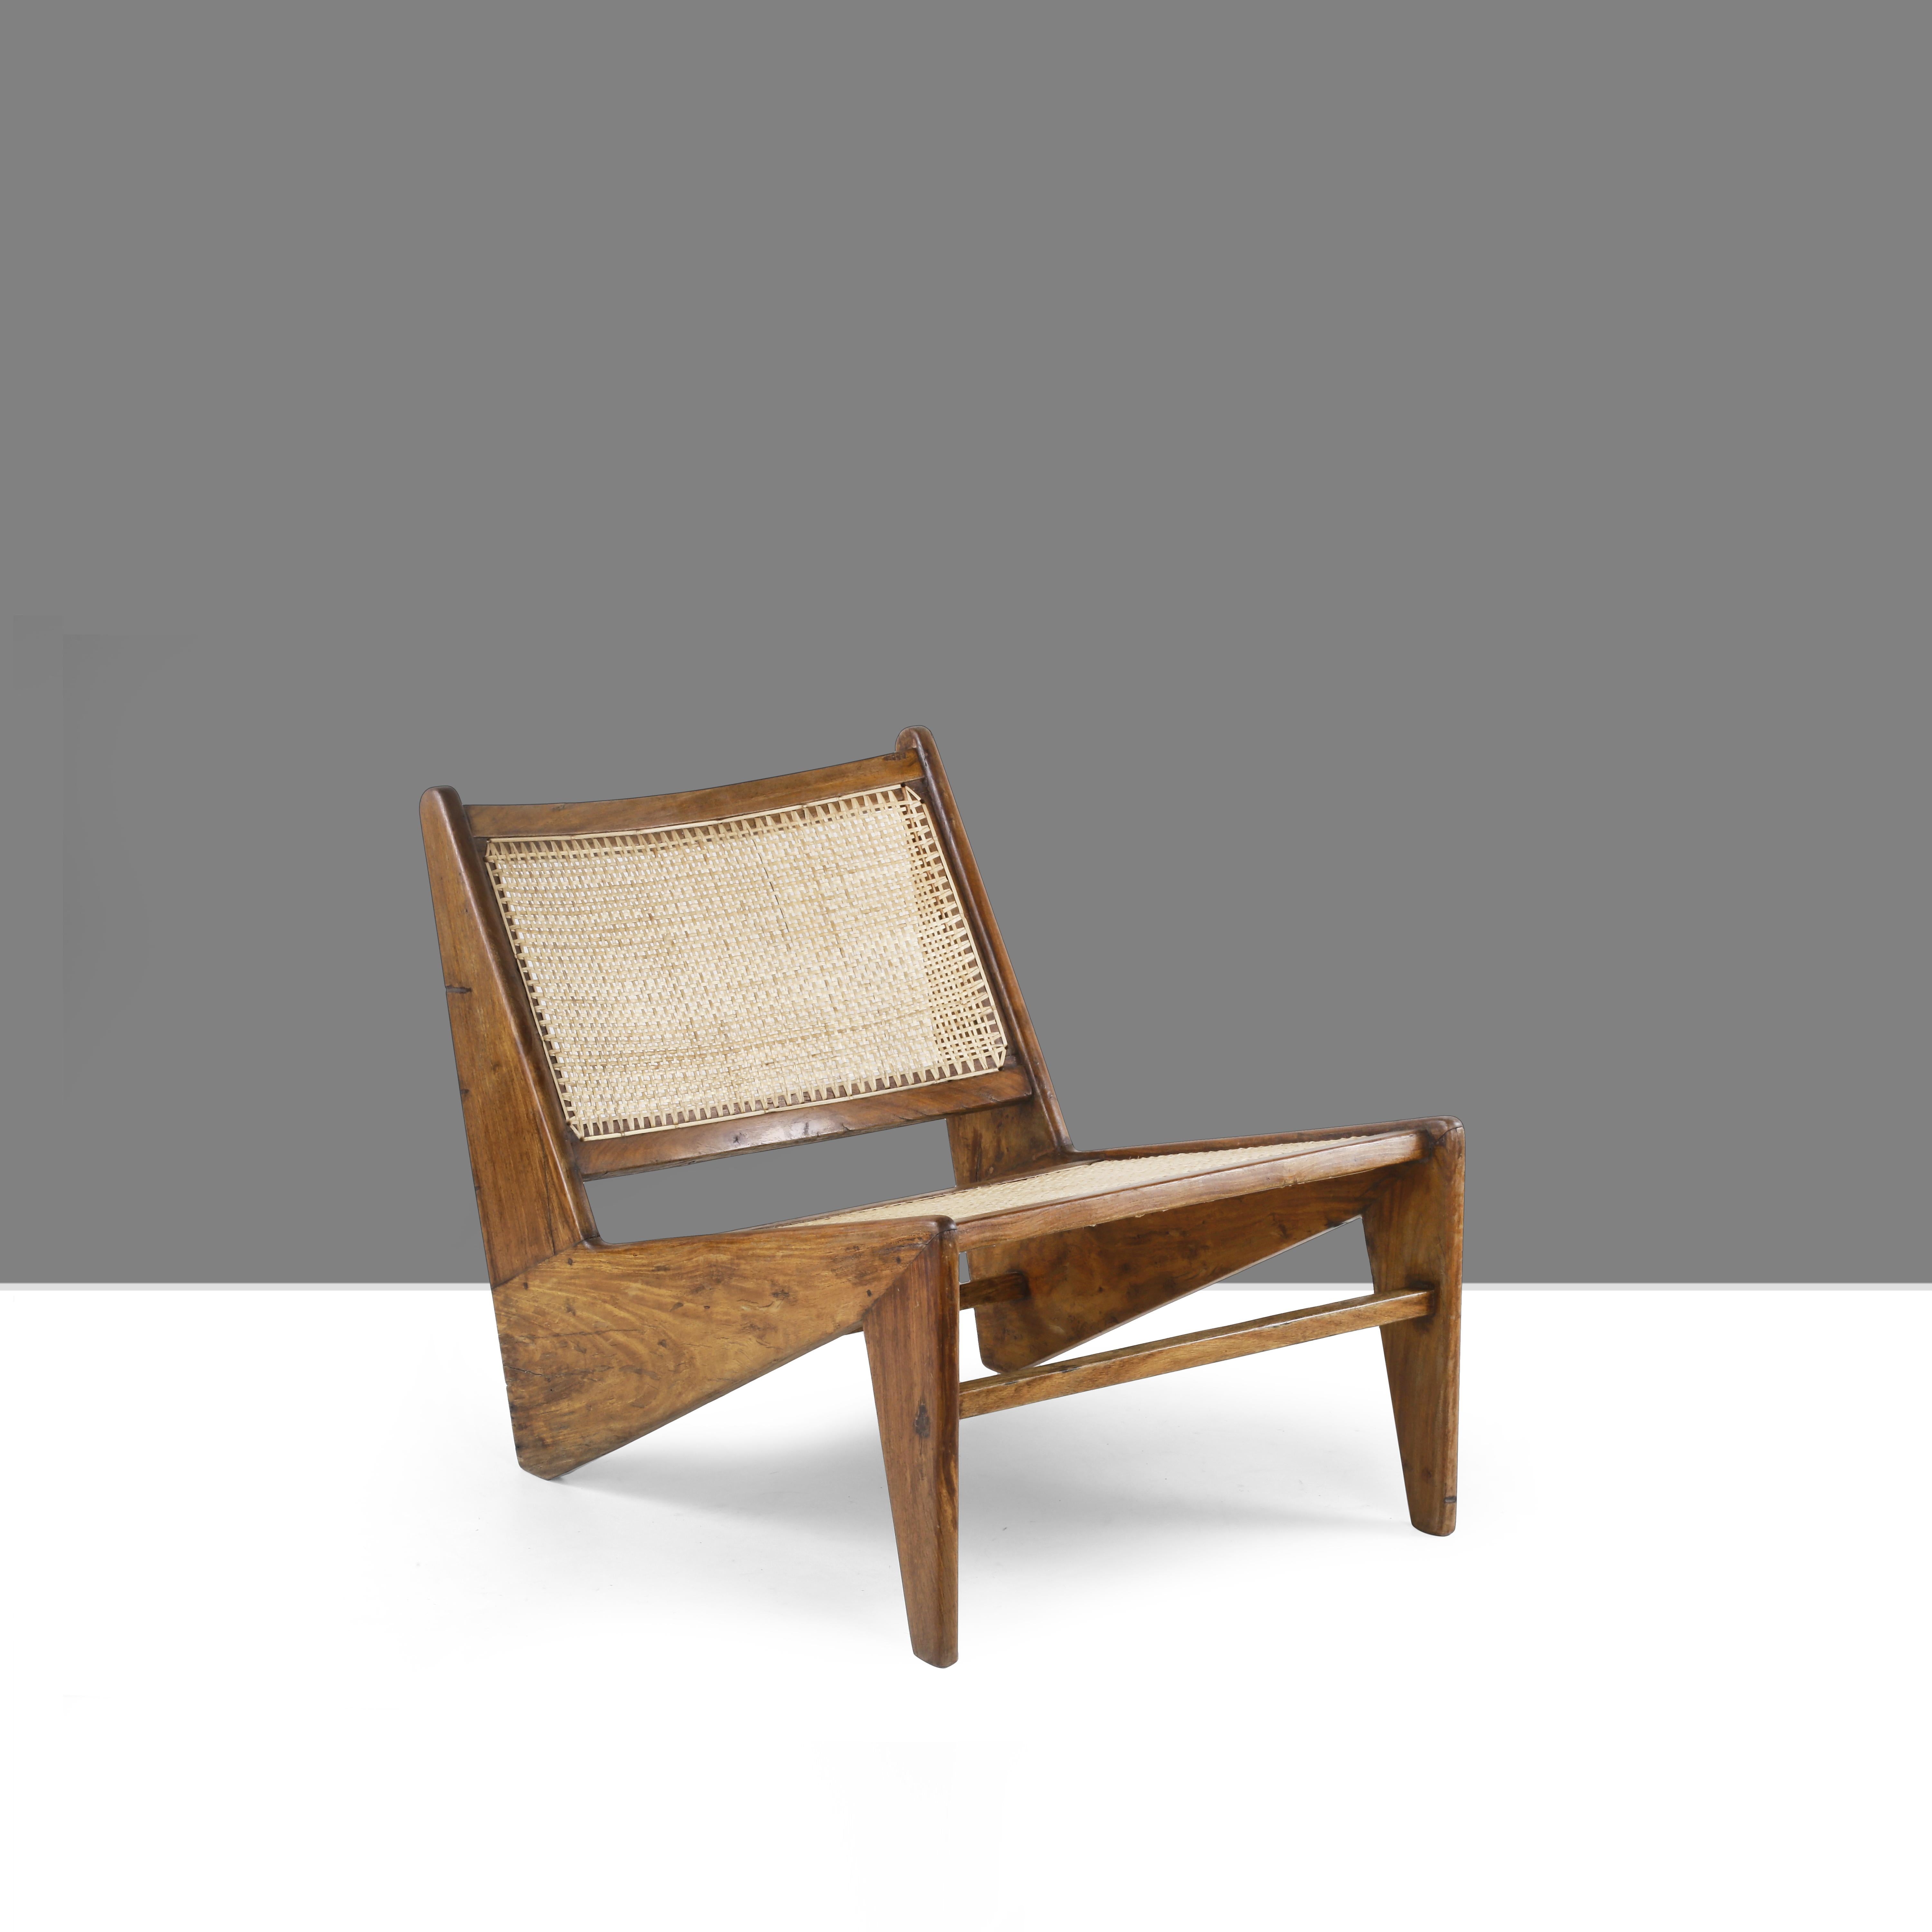 La chaise kangourou a une forme très simple, presque comme une vague. Nous adorons la combinaison de ce cadre en bois solide et de ce canevas fin. Ces contrastes rendent cet objet si unique. Les détails de cette chaise sont stupéfiants, le contour